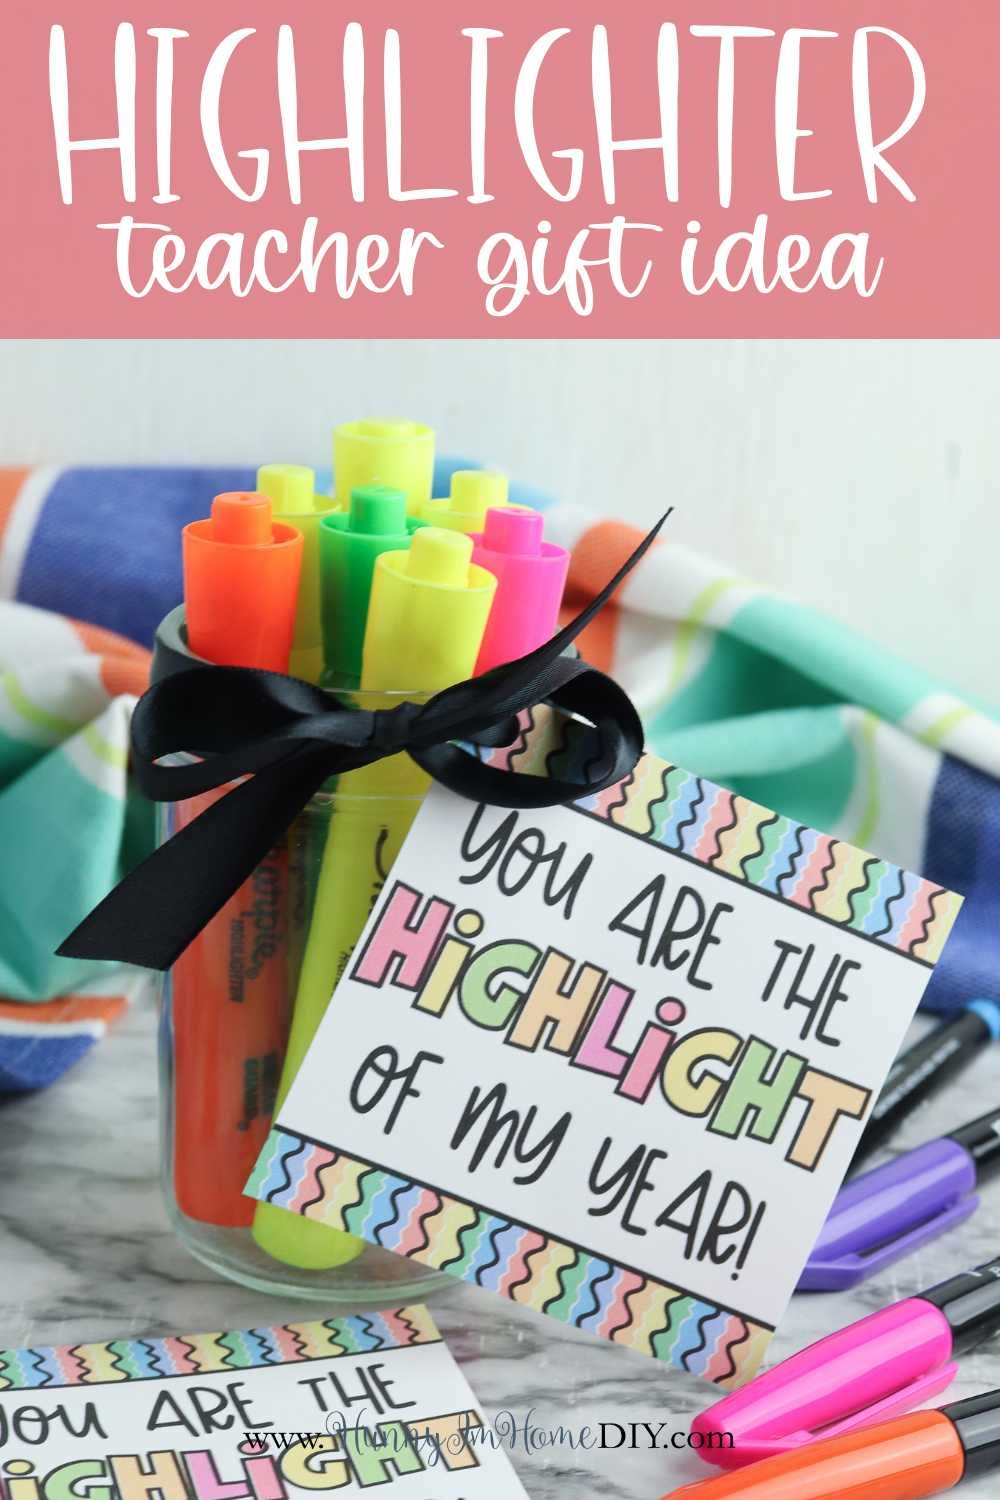 highlighter-gift-idea-for-teachers.jpg